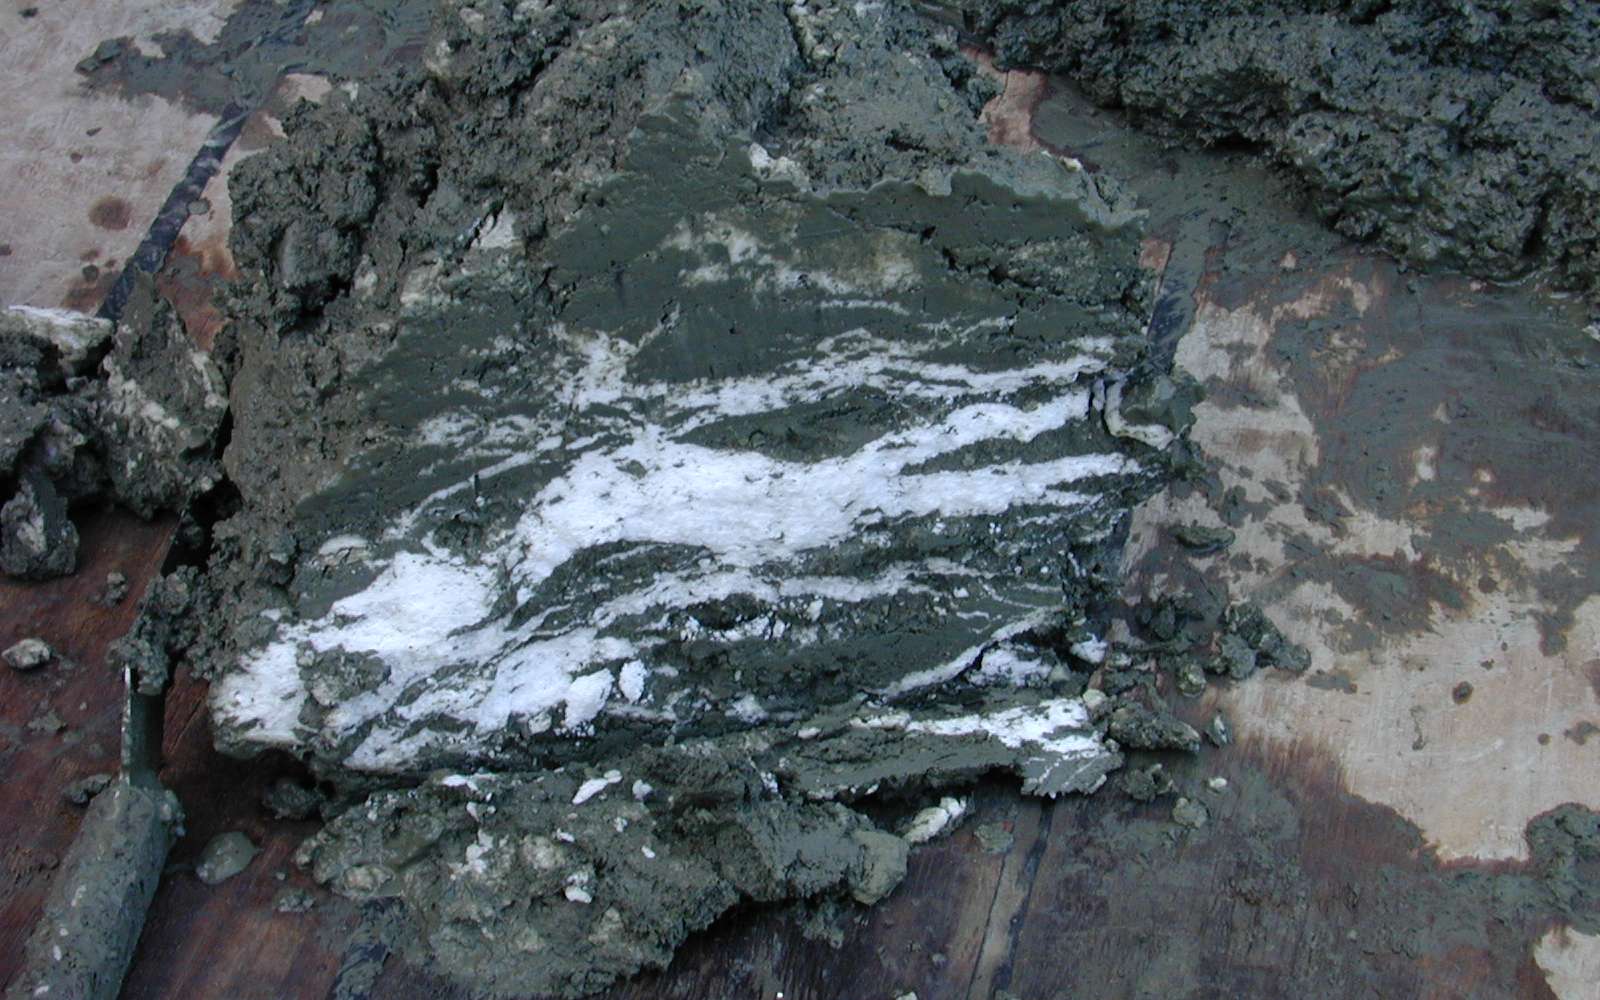 Hydrates de méthane (bandes blanches) dans des sédiments marins. © Wusel007, Wikimedia Commons, CC by-sa 3.0